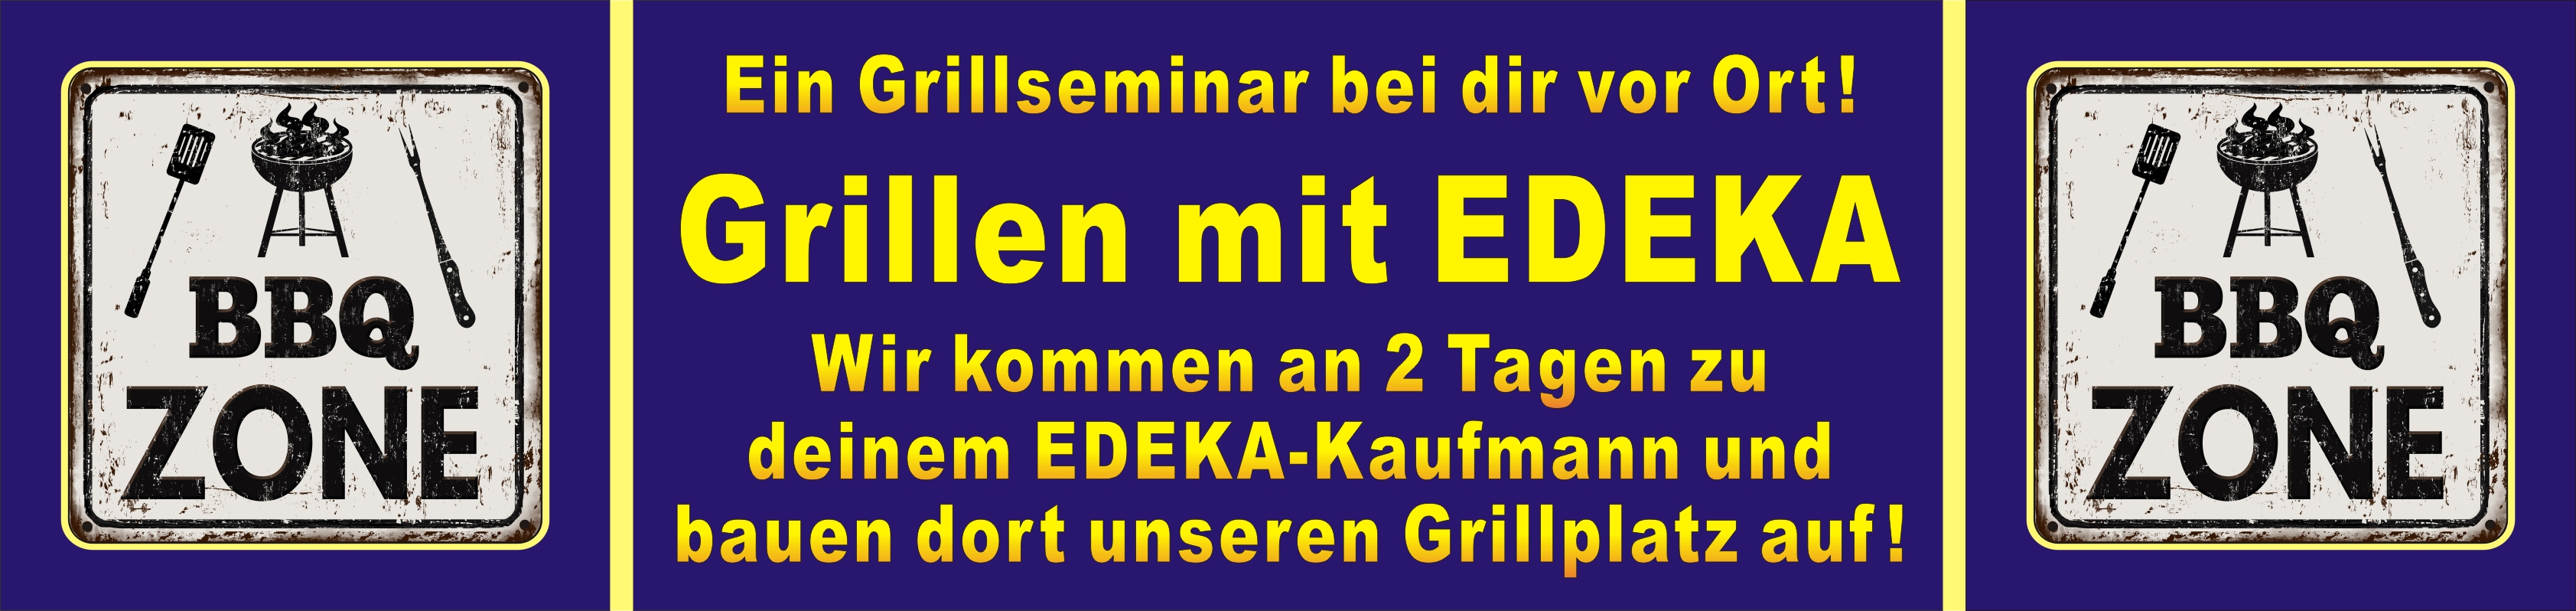 Der Grillkurs GRILLEN MIT EDEKA, für Teilnehmer aus Herford, Bielefeld, Osnabrück, Gütersloh, Paderborn,...